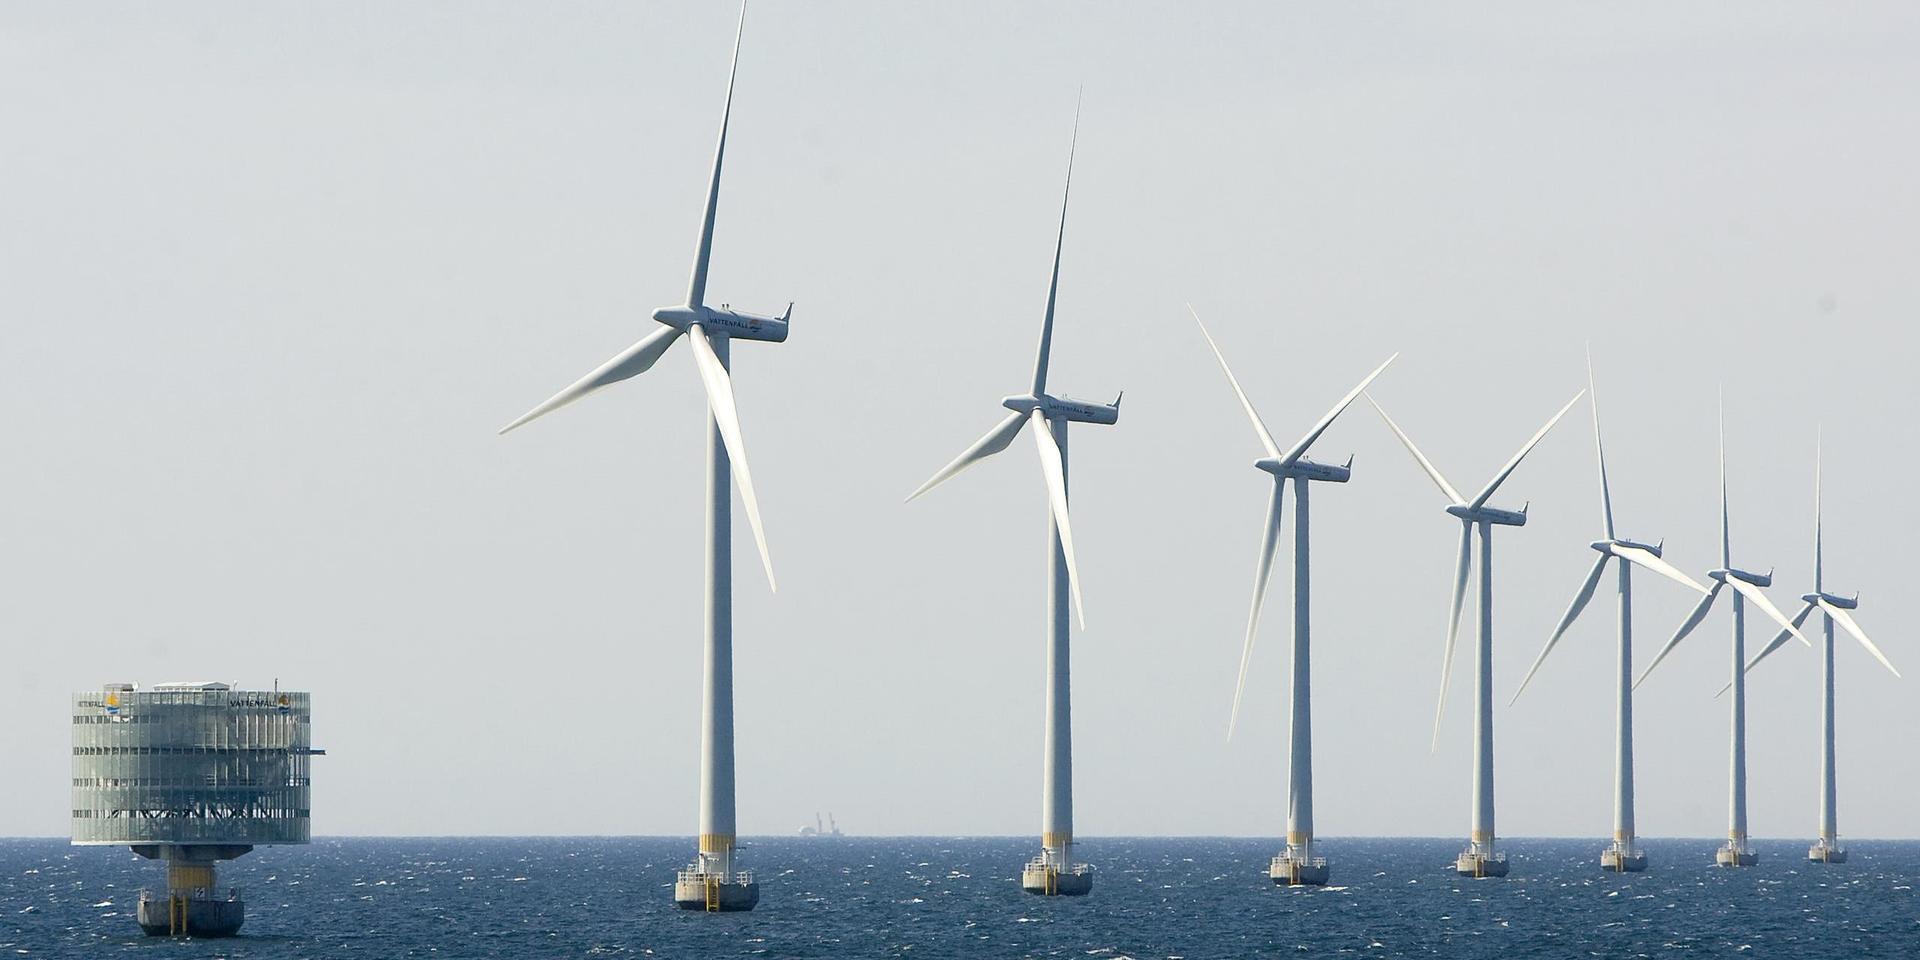 Omfattande tillståndsprövningar är ett av hindren för en snabbare utbyggnad av vindkraft till havs i Sverige, enligt branschorganisationen Svensk vindenergi. Arkivbild.